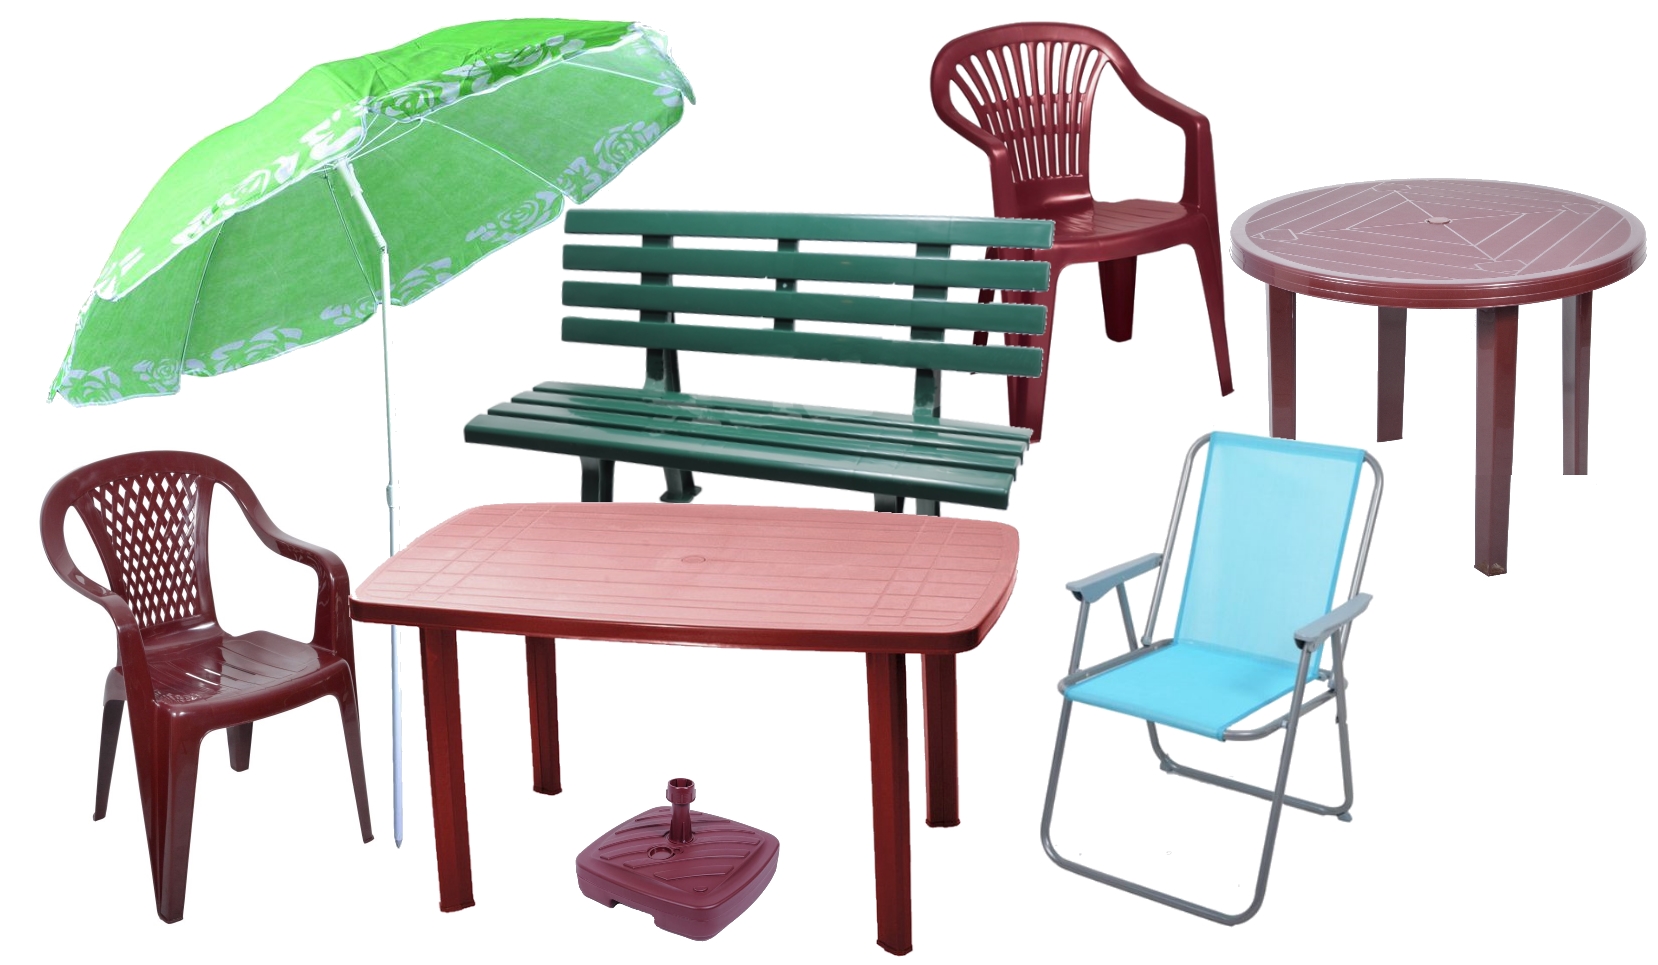 Магазины пластиковая мебель. Комплект садовый (стол Tiffany и 2 кресла Kingston). Комплект мебели Диорит XXI со 1007 (зонт, стол, 2 стула), зеленый. Комплект из ротанга AFM 310b. Стол садовый g456.